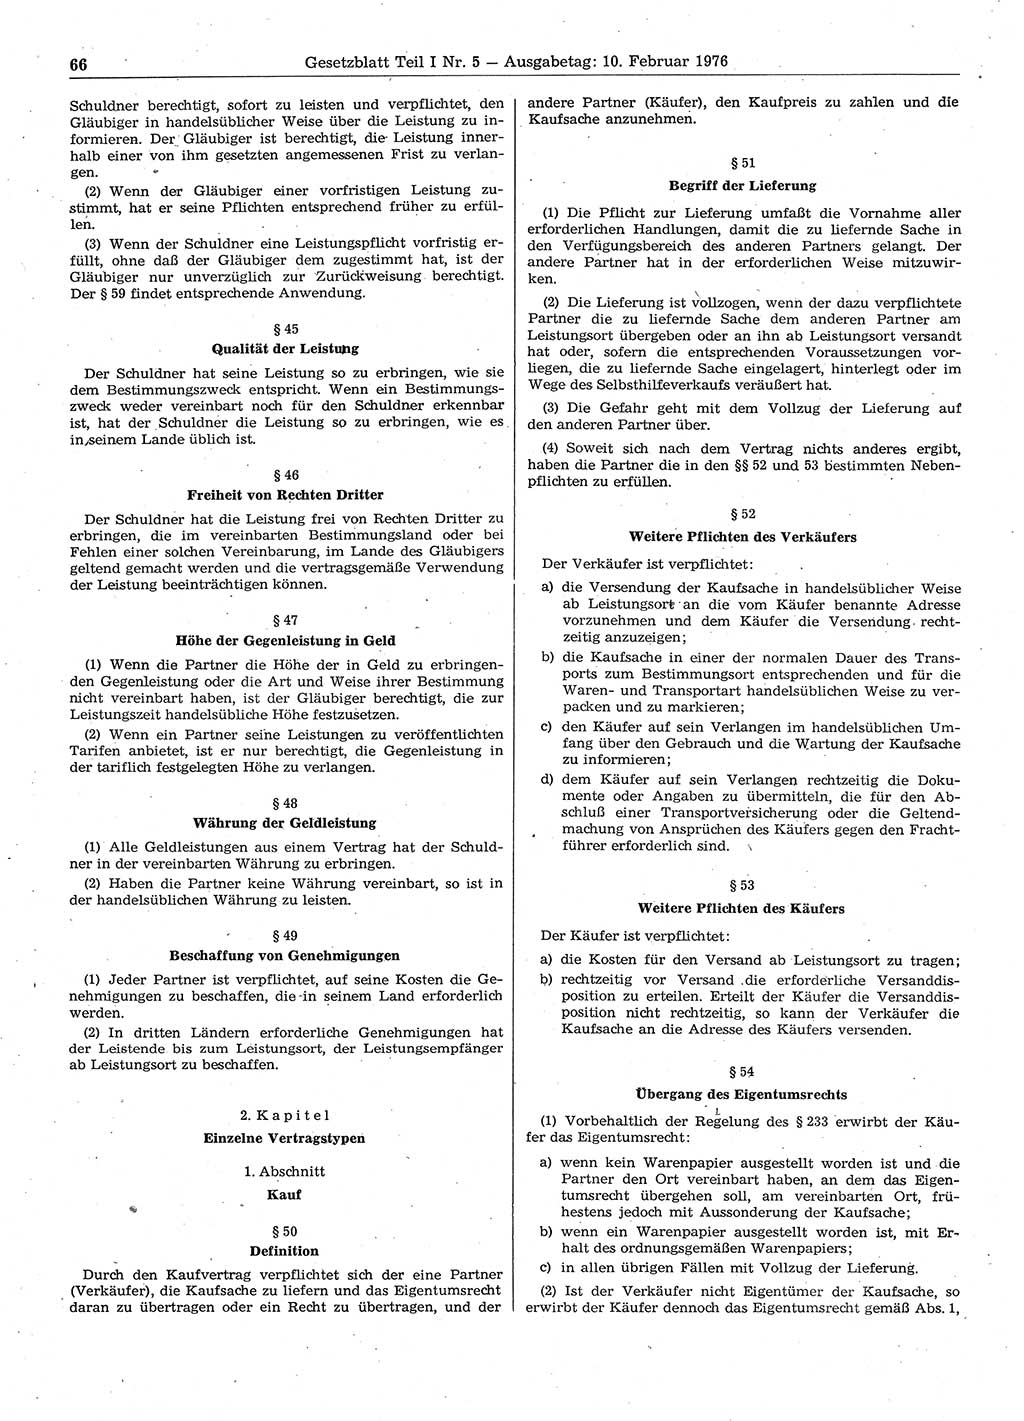 Gesetzblatt (GBl.) der Deutschen Demokratischen Republik (DDR) Teil Ⅰ 1976, Seite 66 (GBl. DDR Ⅰ 1976, S. 66)